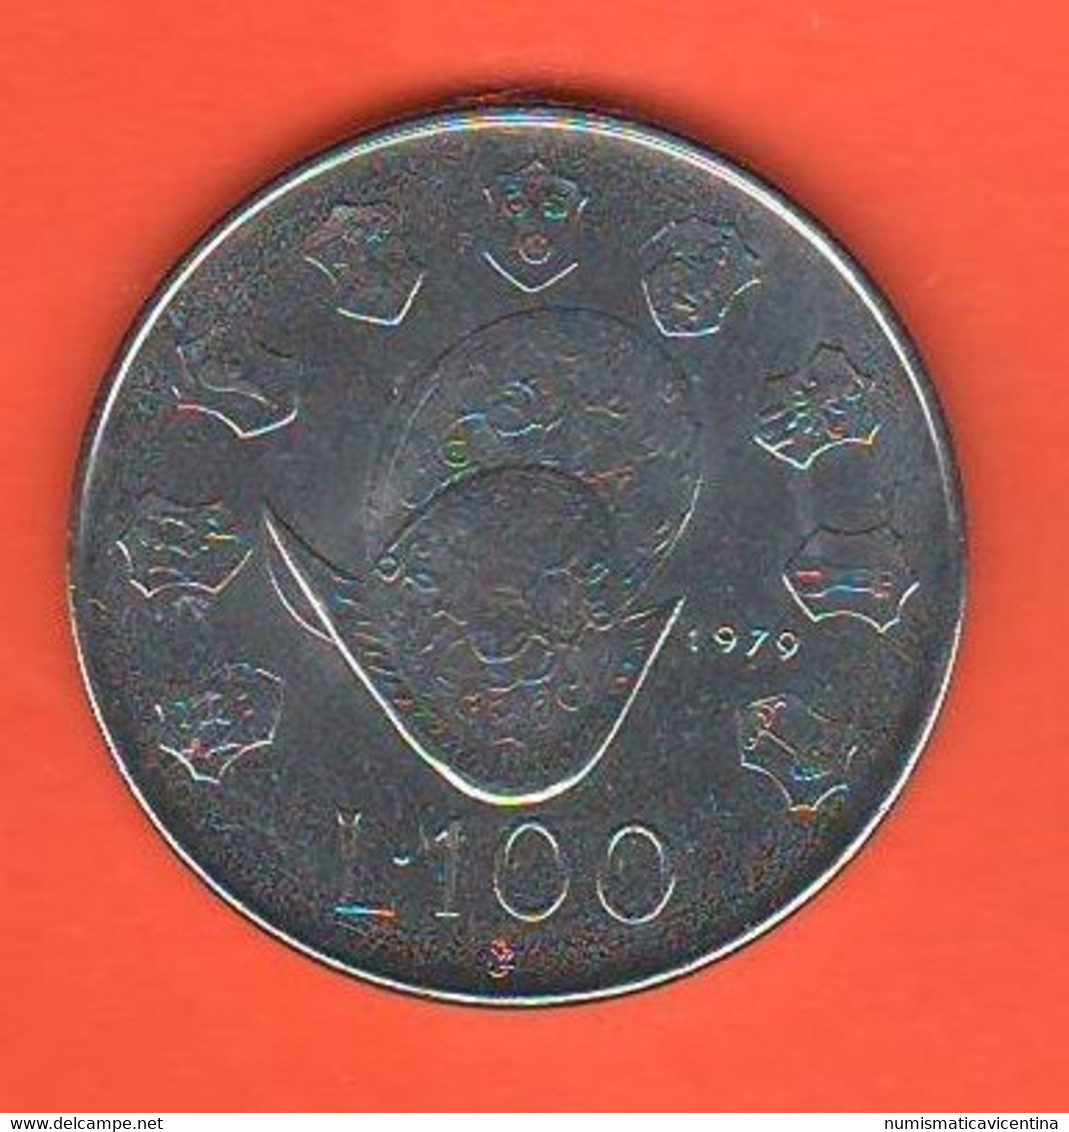 San Marino 100 Lire 1979 Steel Coin - Saint-Marin